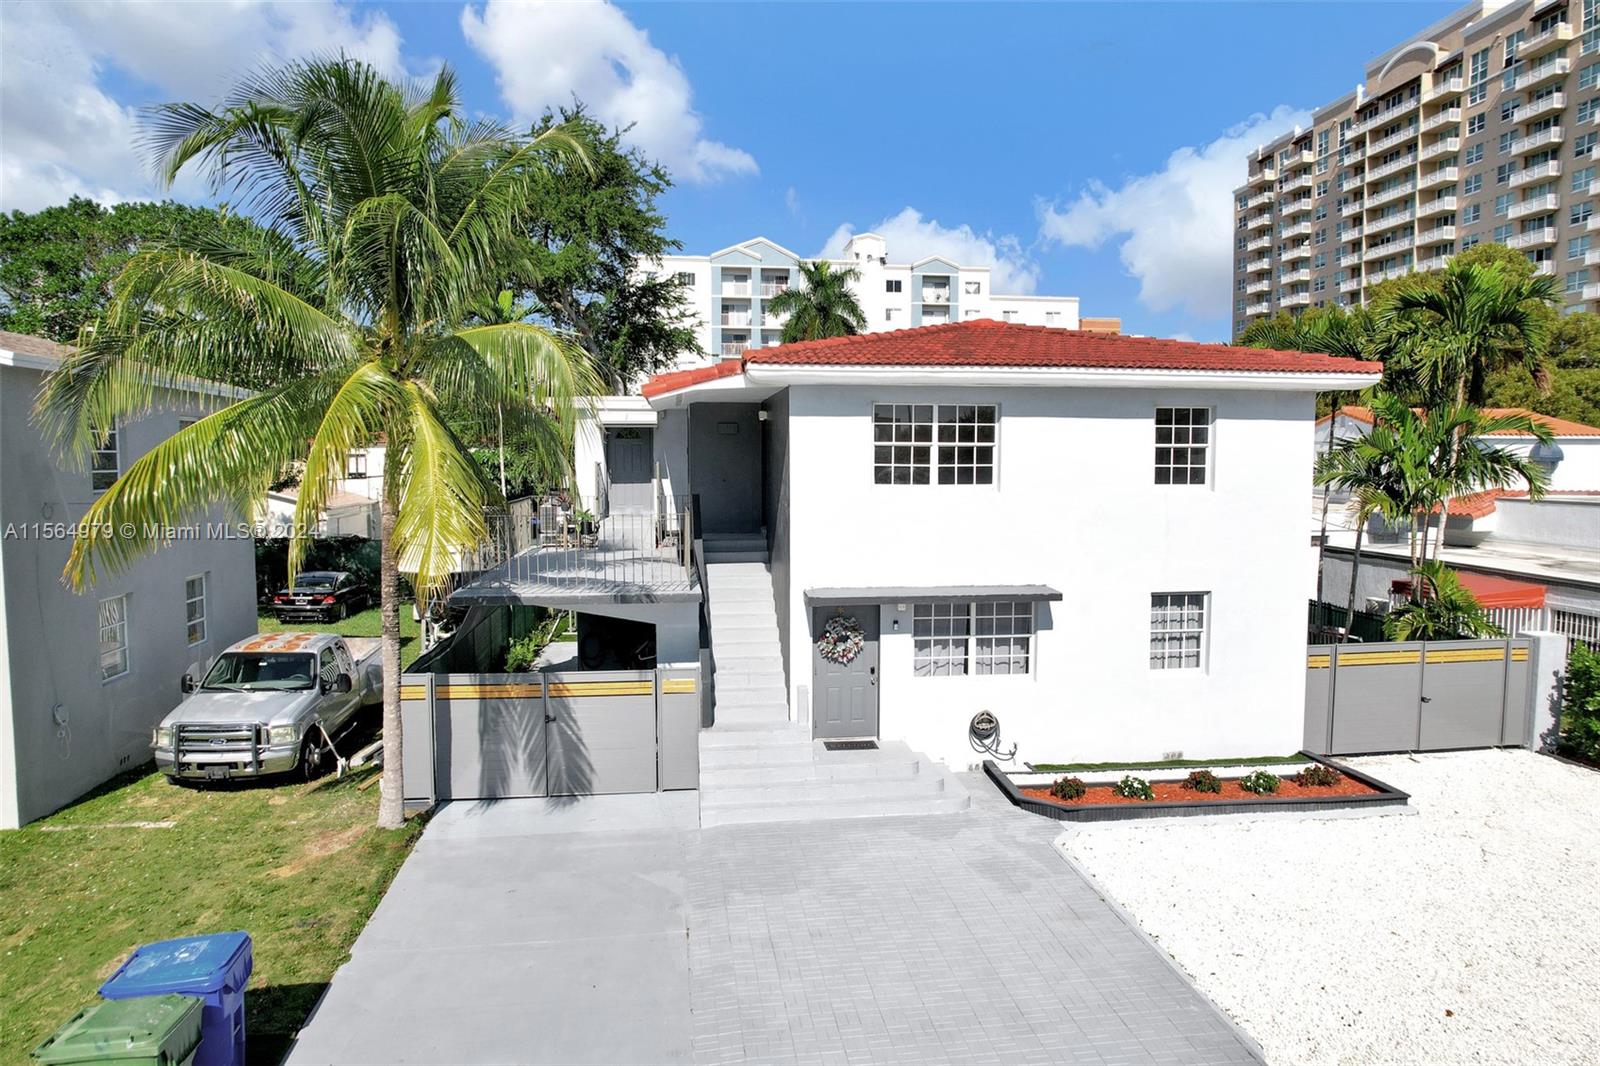 Rental Property at 3711 Sw 27th Ter, Miami, Broward County, Florida -  - $1,995,000 MO.